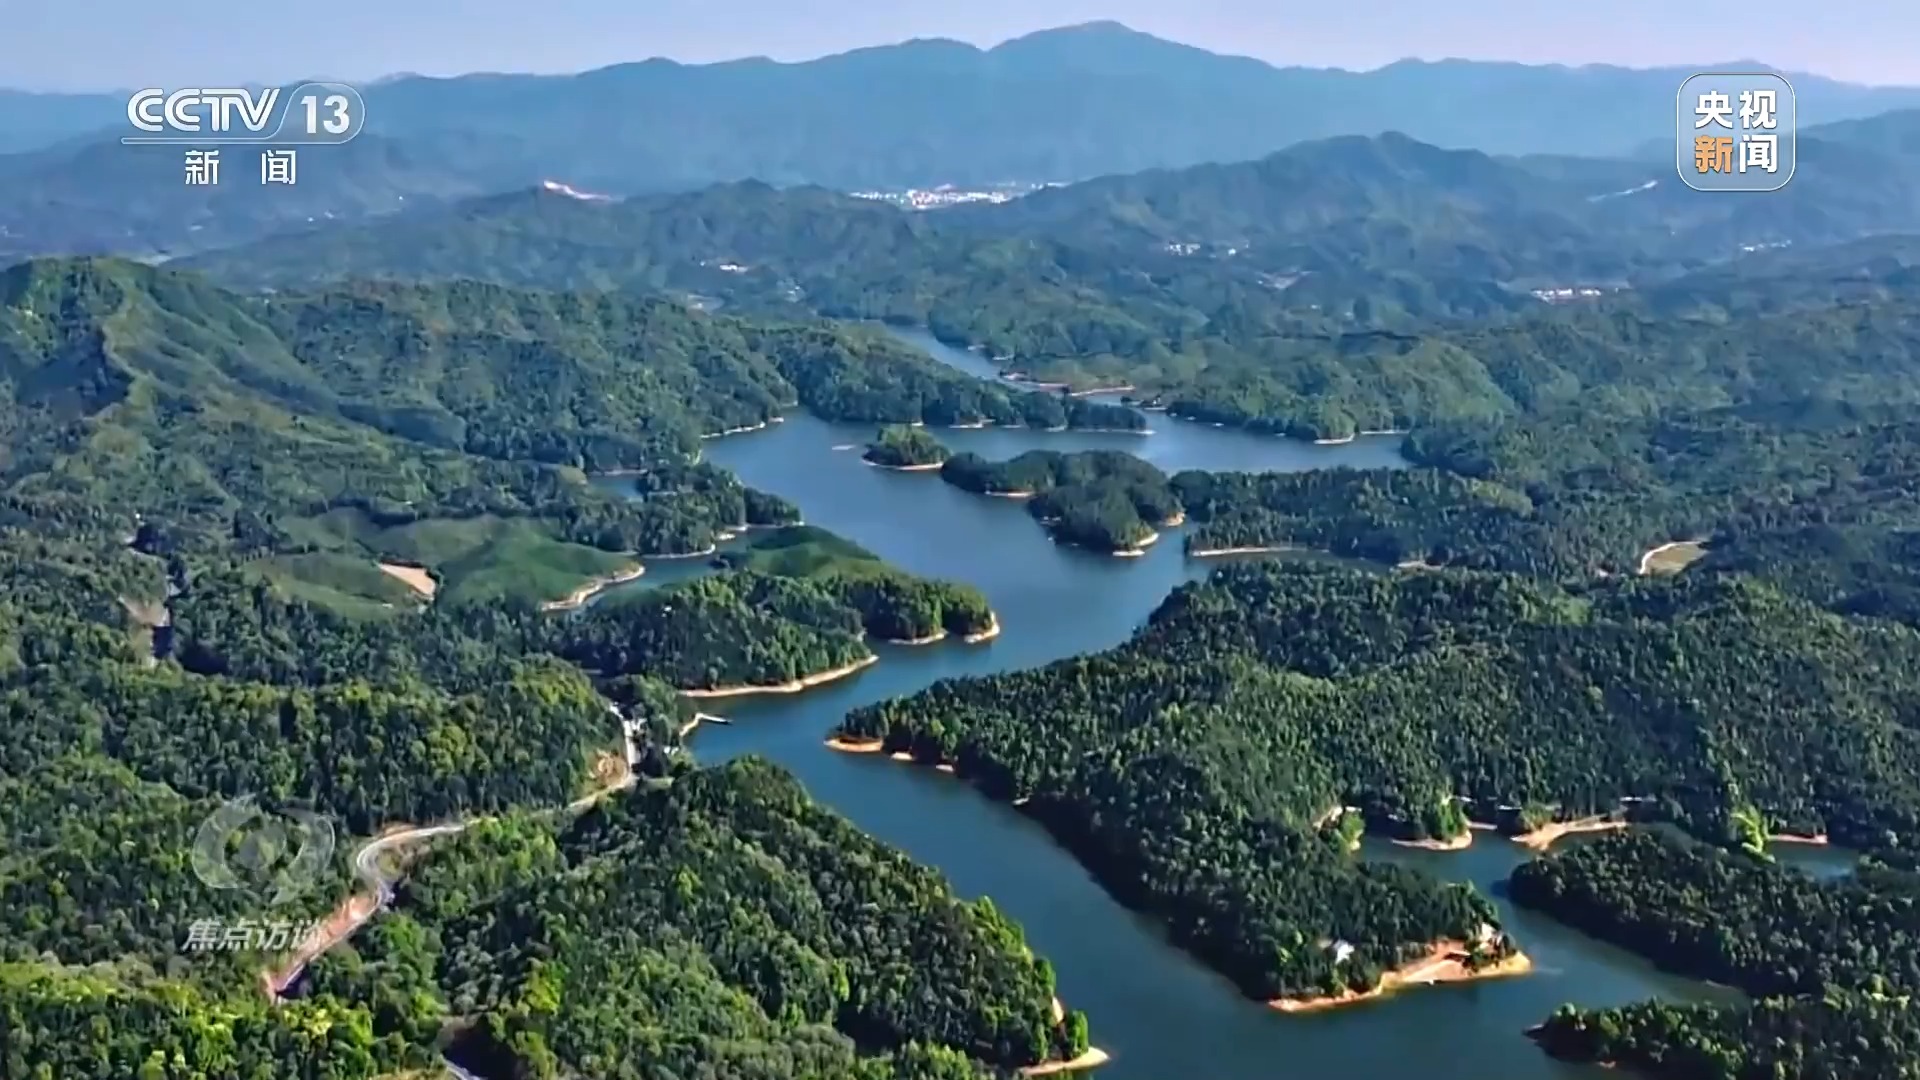 焦點訪談丨全民植樹增綠 共建美麗中國